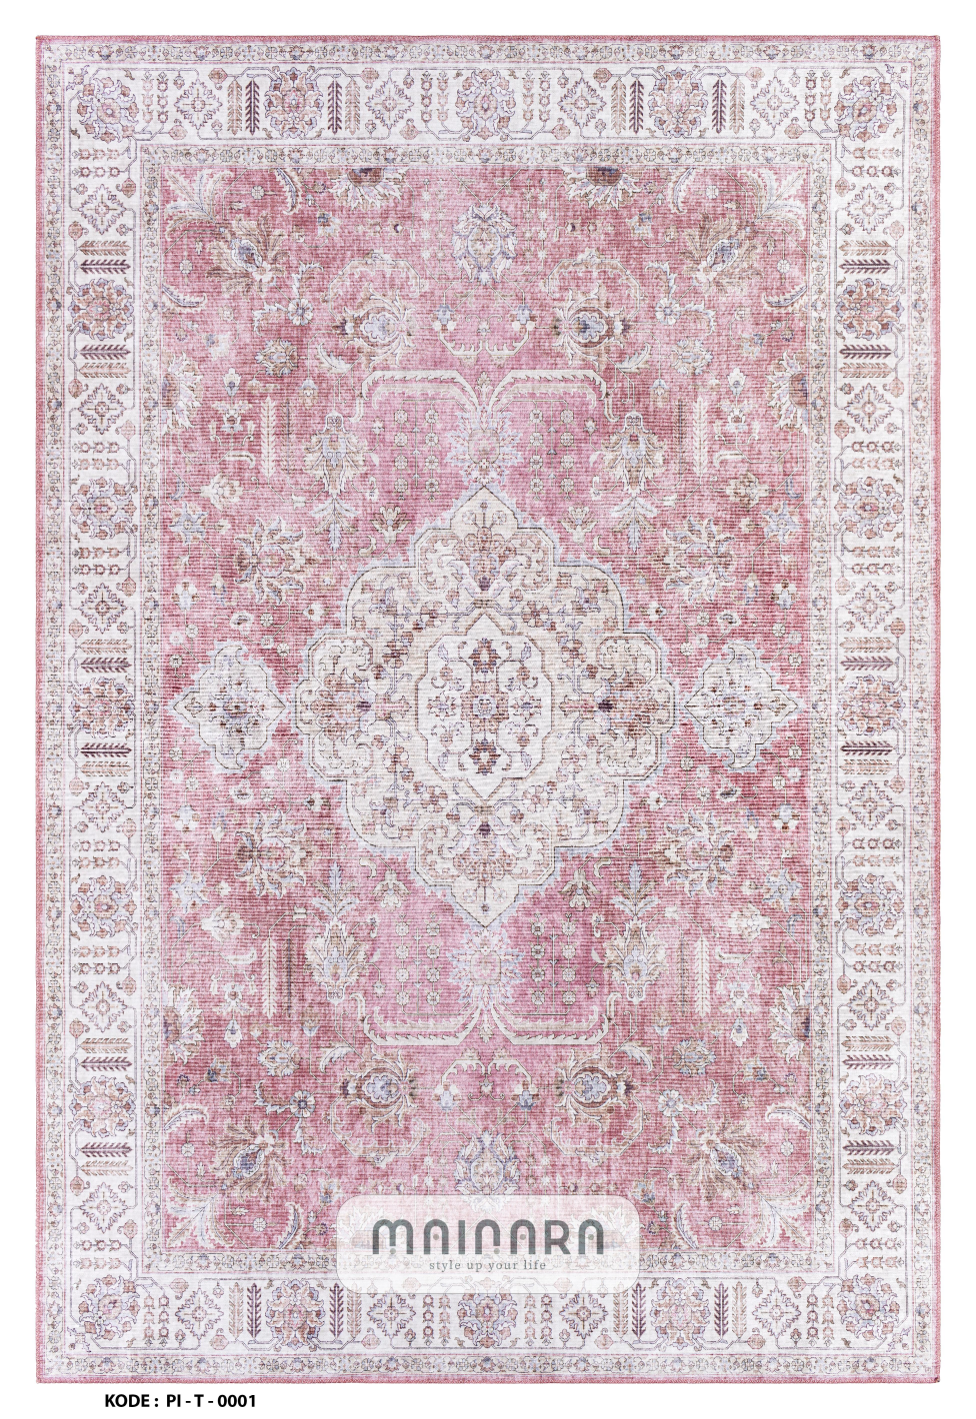 Karpet Tradisional (PI-T-0001) - Pink